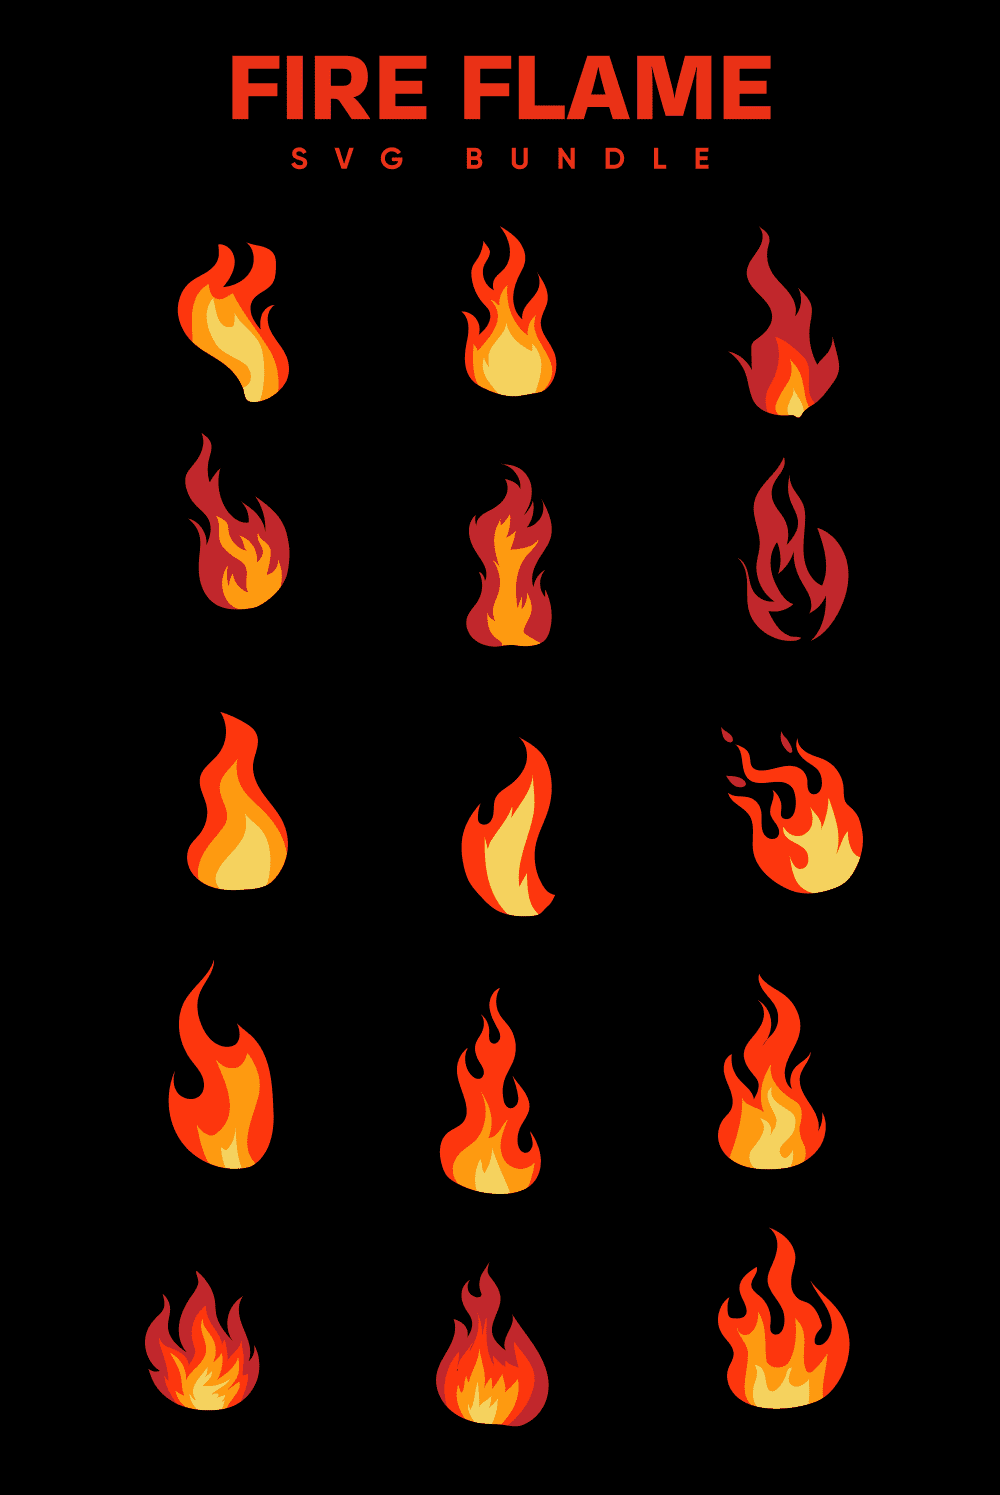 Fire Flame Svg - Pinterest.